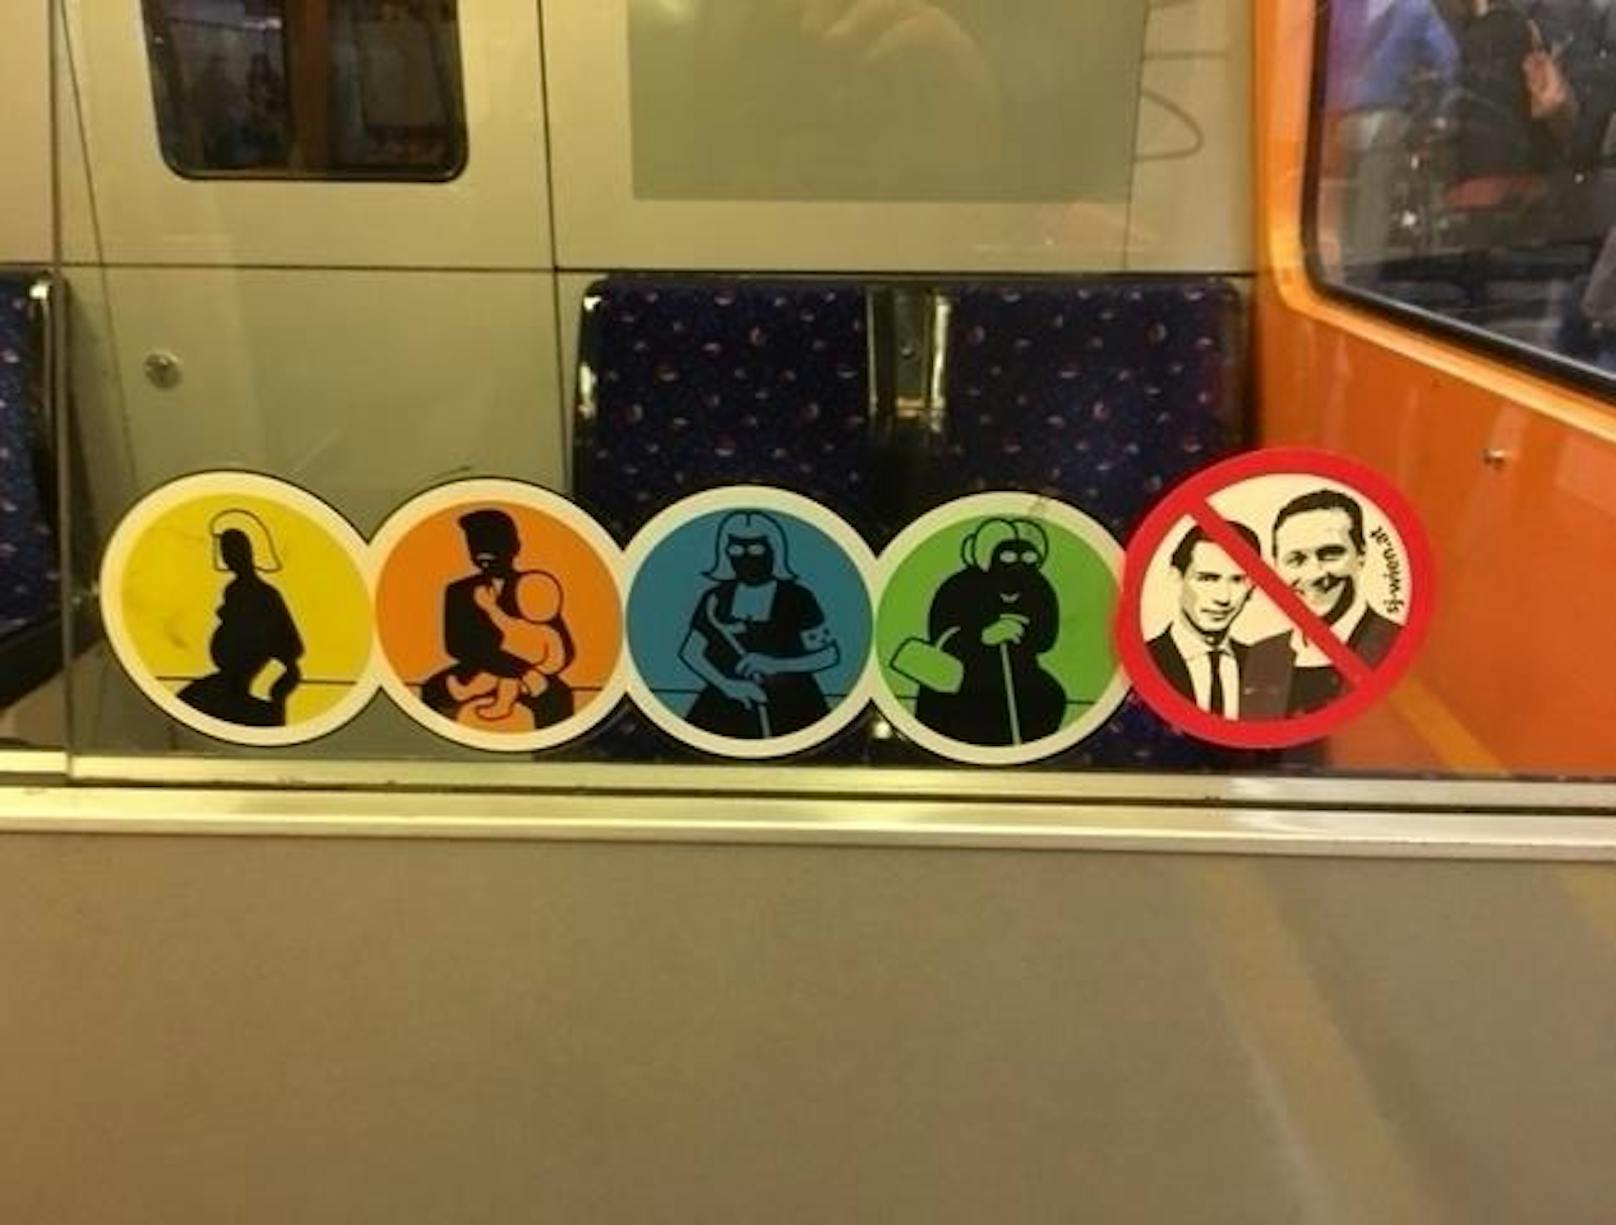 Direkt neben dem Piktogramm, man möge älteren Personen in der U-Bahn bitte einen Sitzplatz überlassen, klebt derzeit das politische Statement eines Unbekannten.